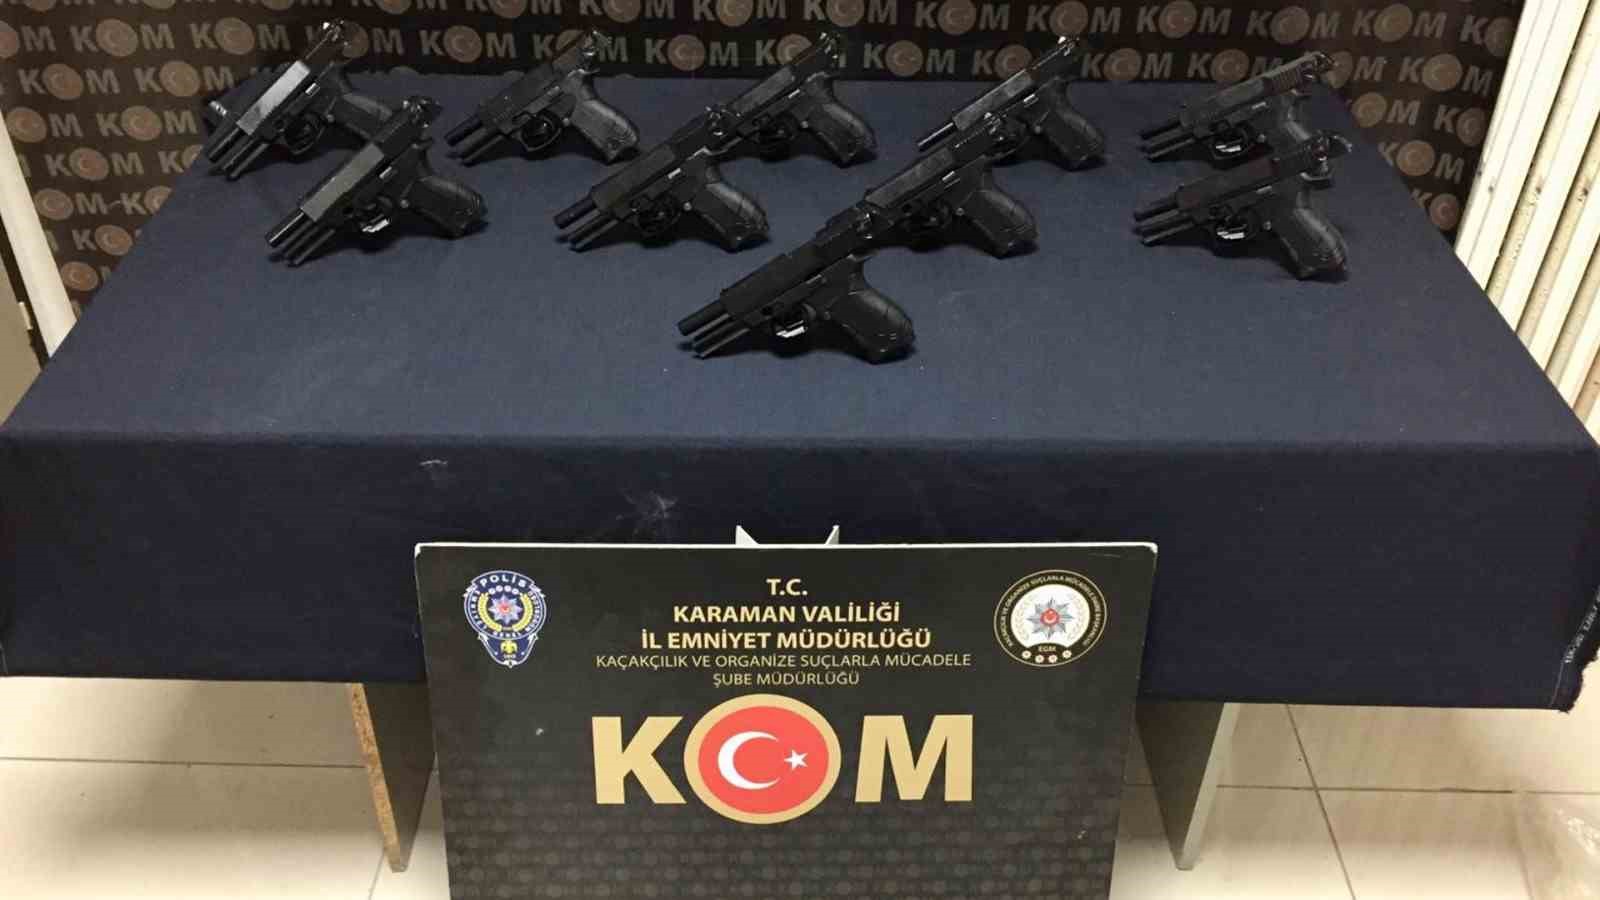 Karaman’da silah operasyonu